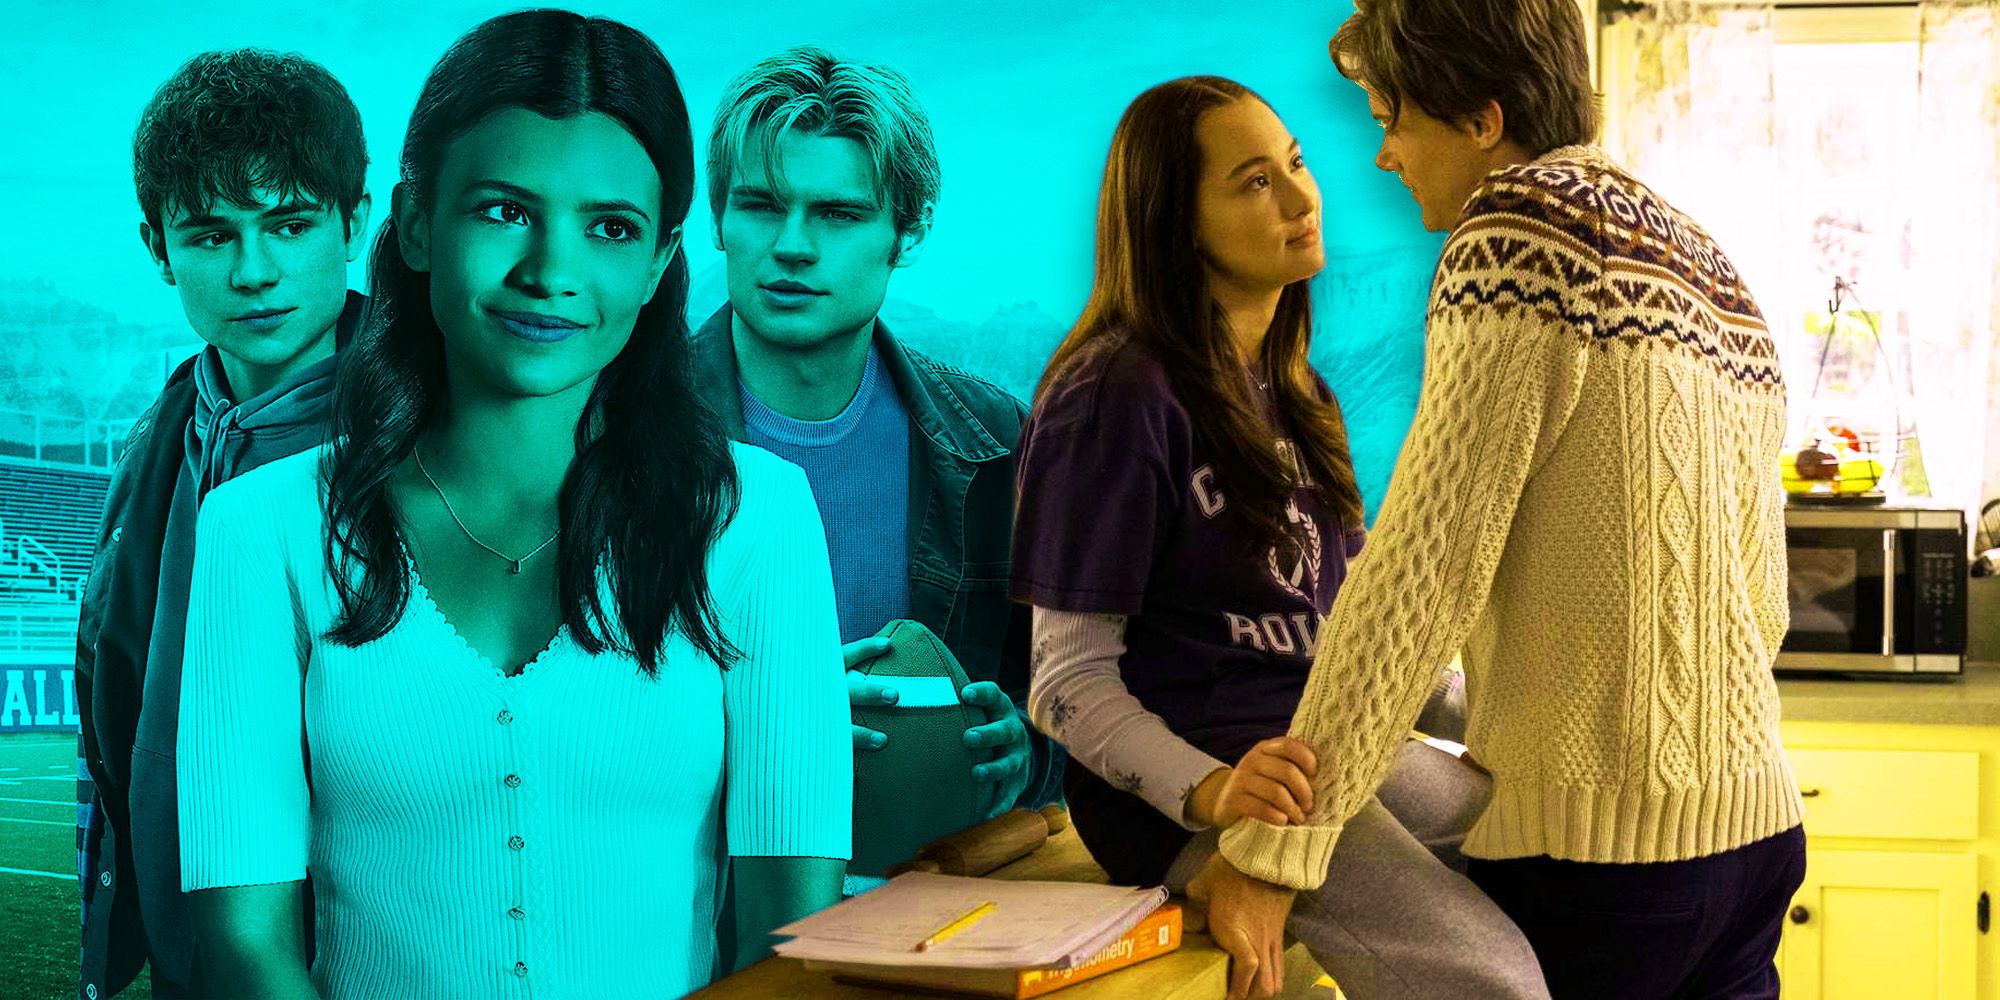 El nuevo drama adolescente es la respuesta de Netflix al programa romántico más popular de Amazon en los últimos dos años